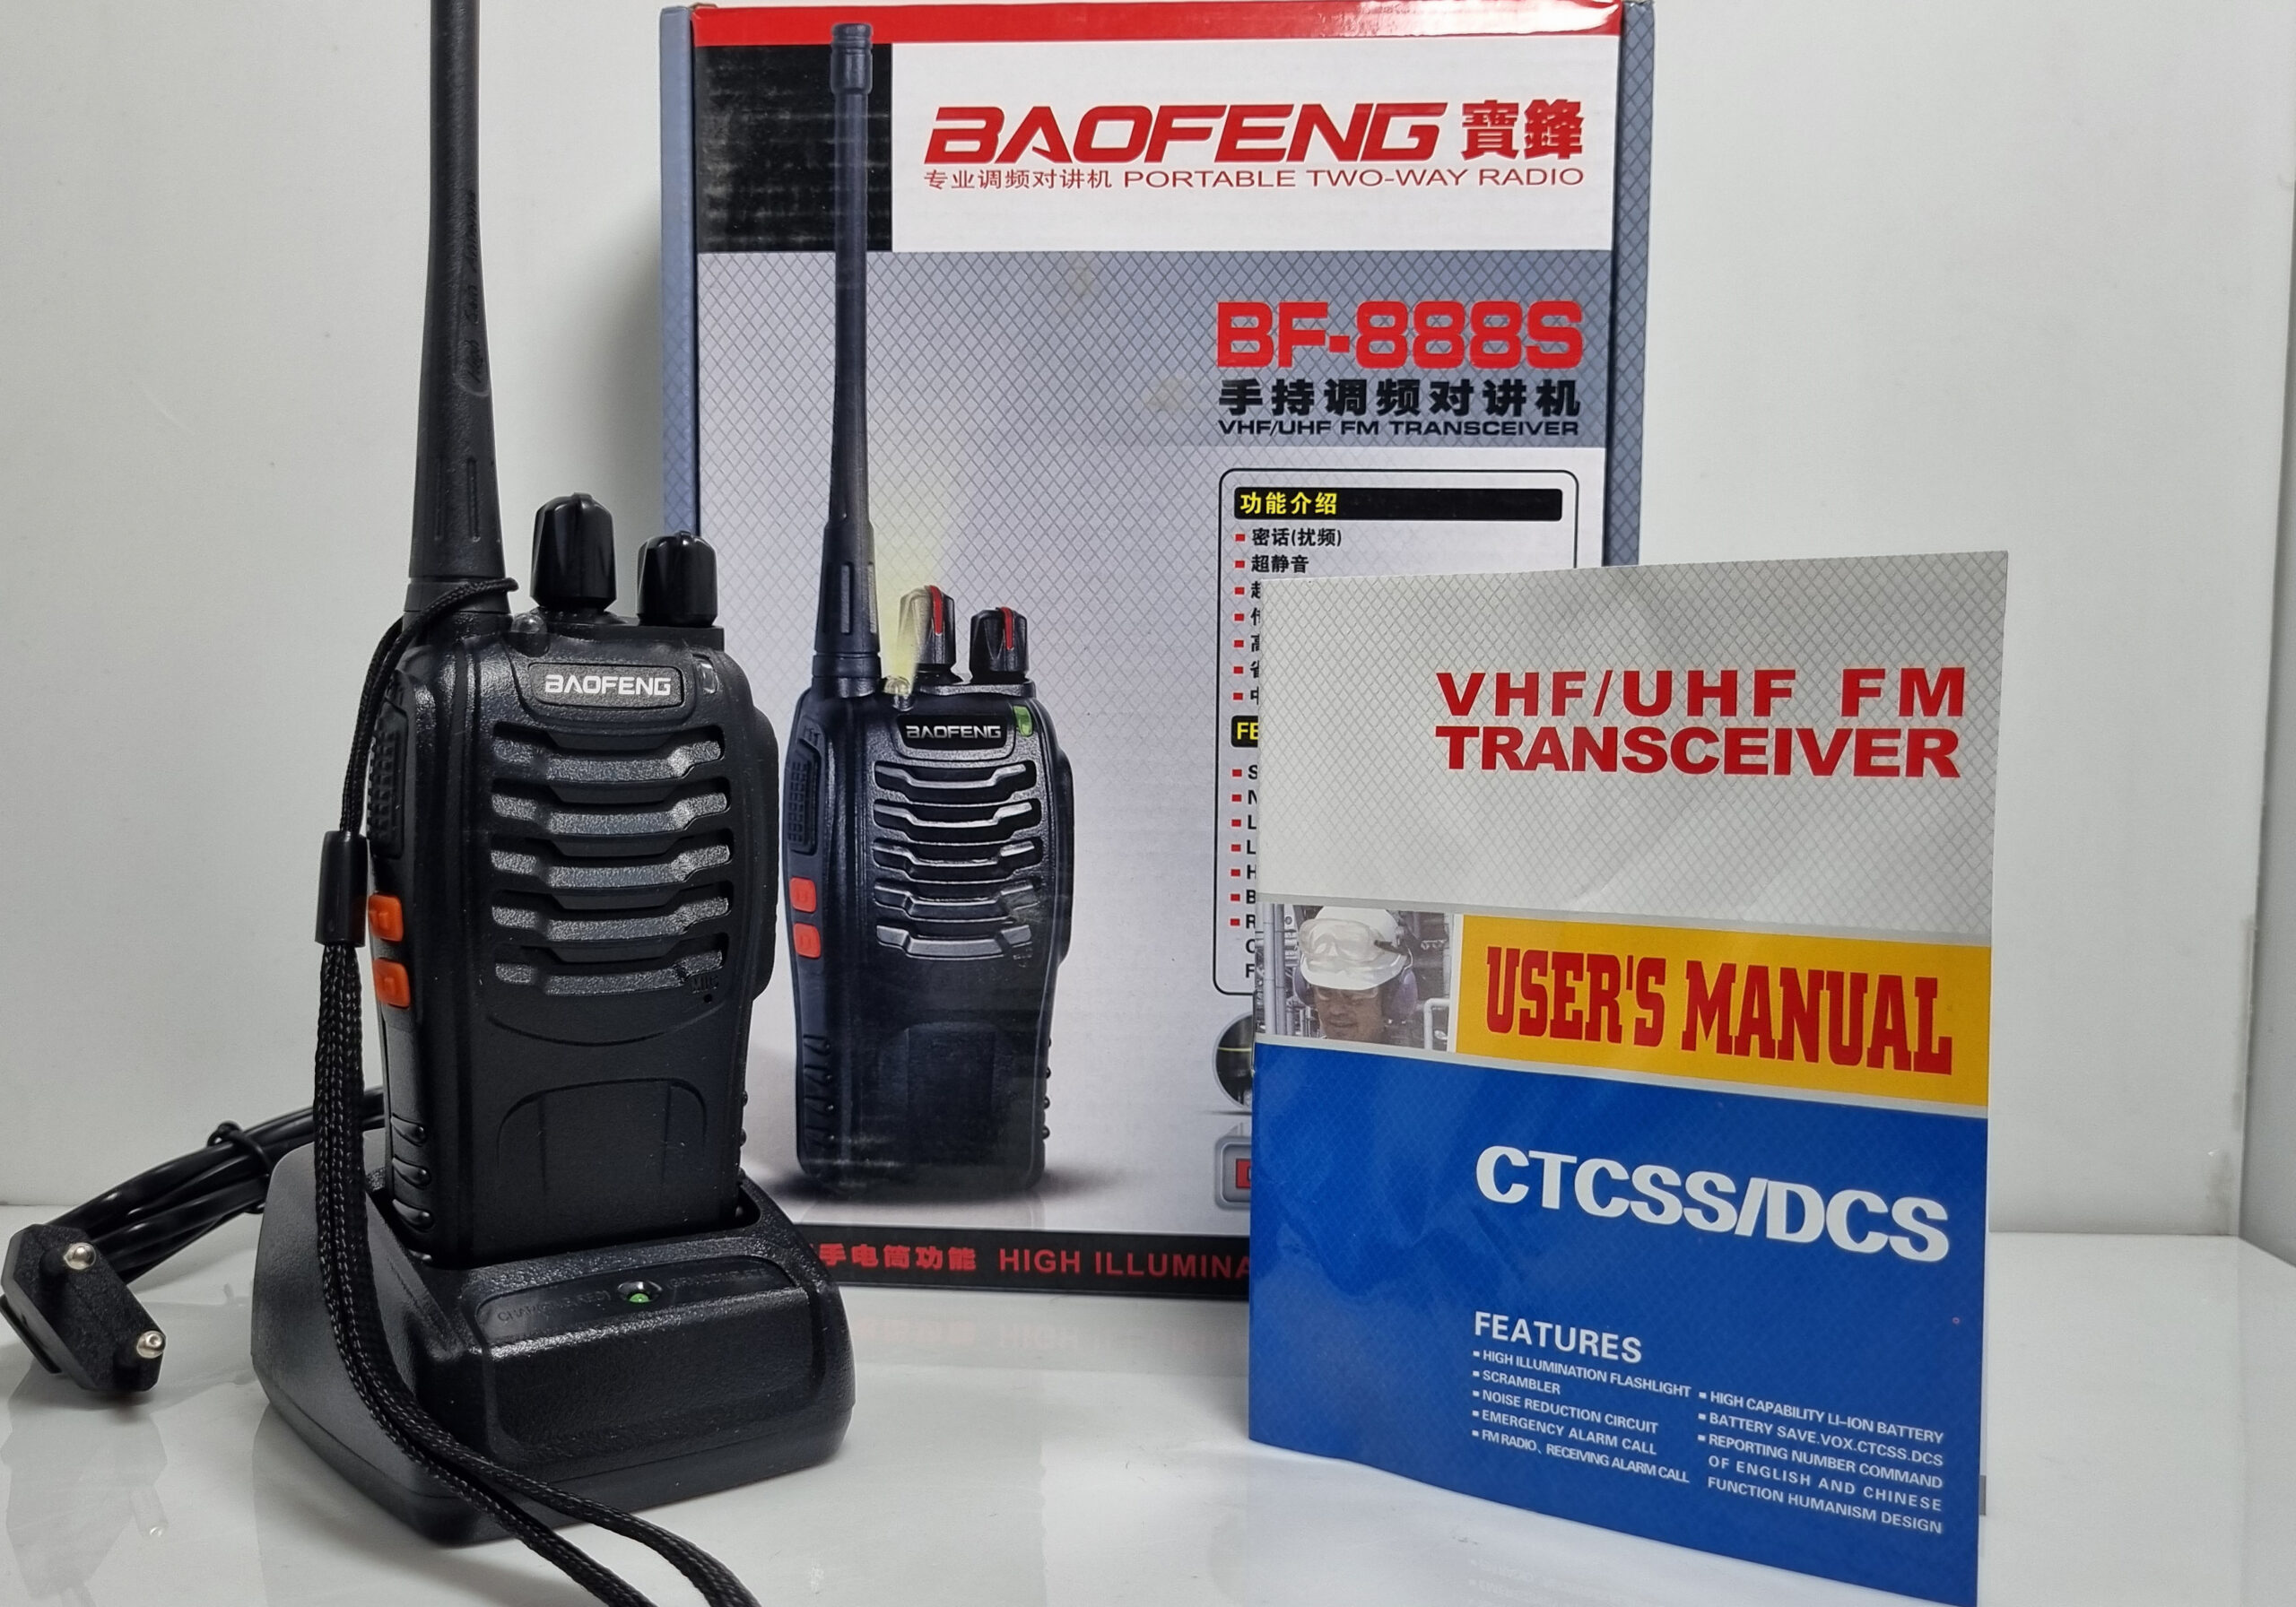 نمایندگی خرید فروش قیمت بیسیم باوفنگ Baofeng مدل BF-888S